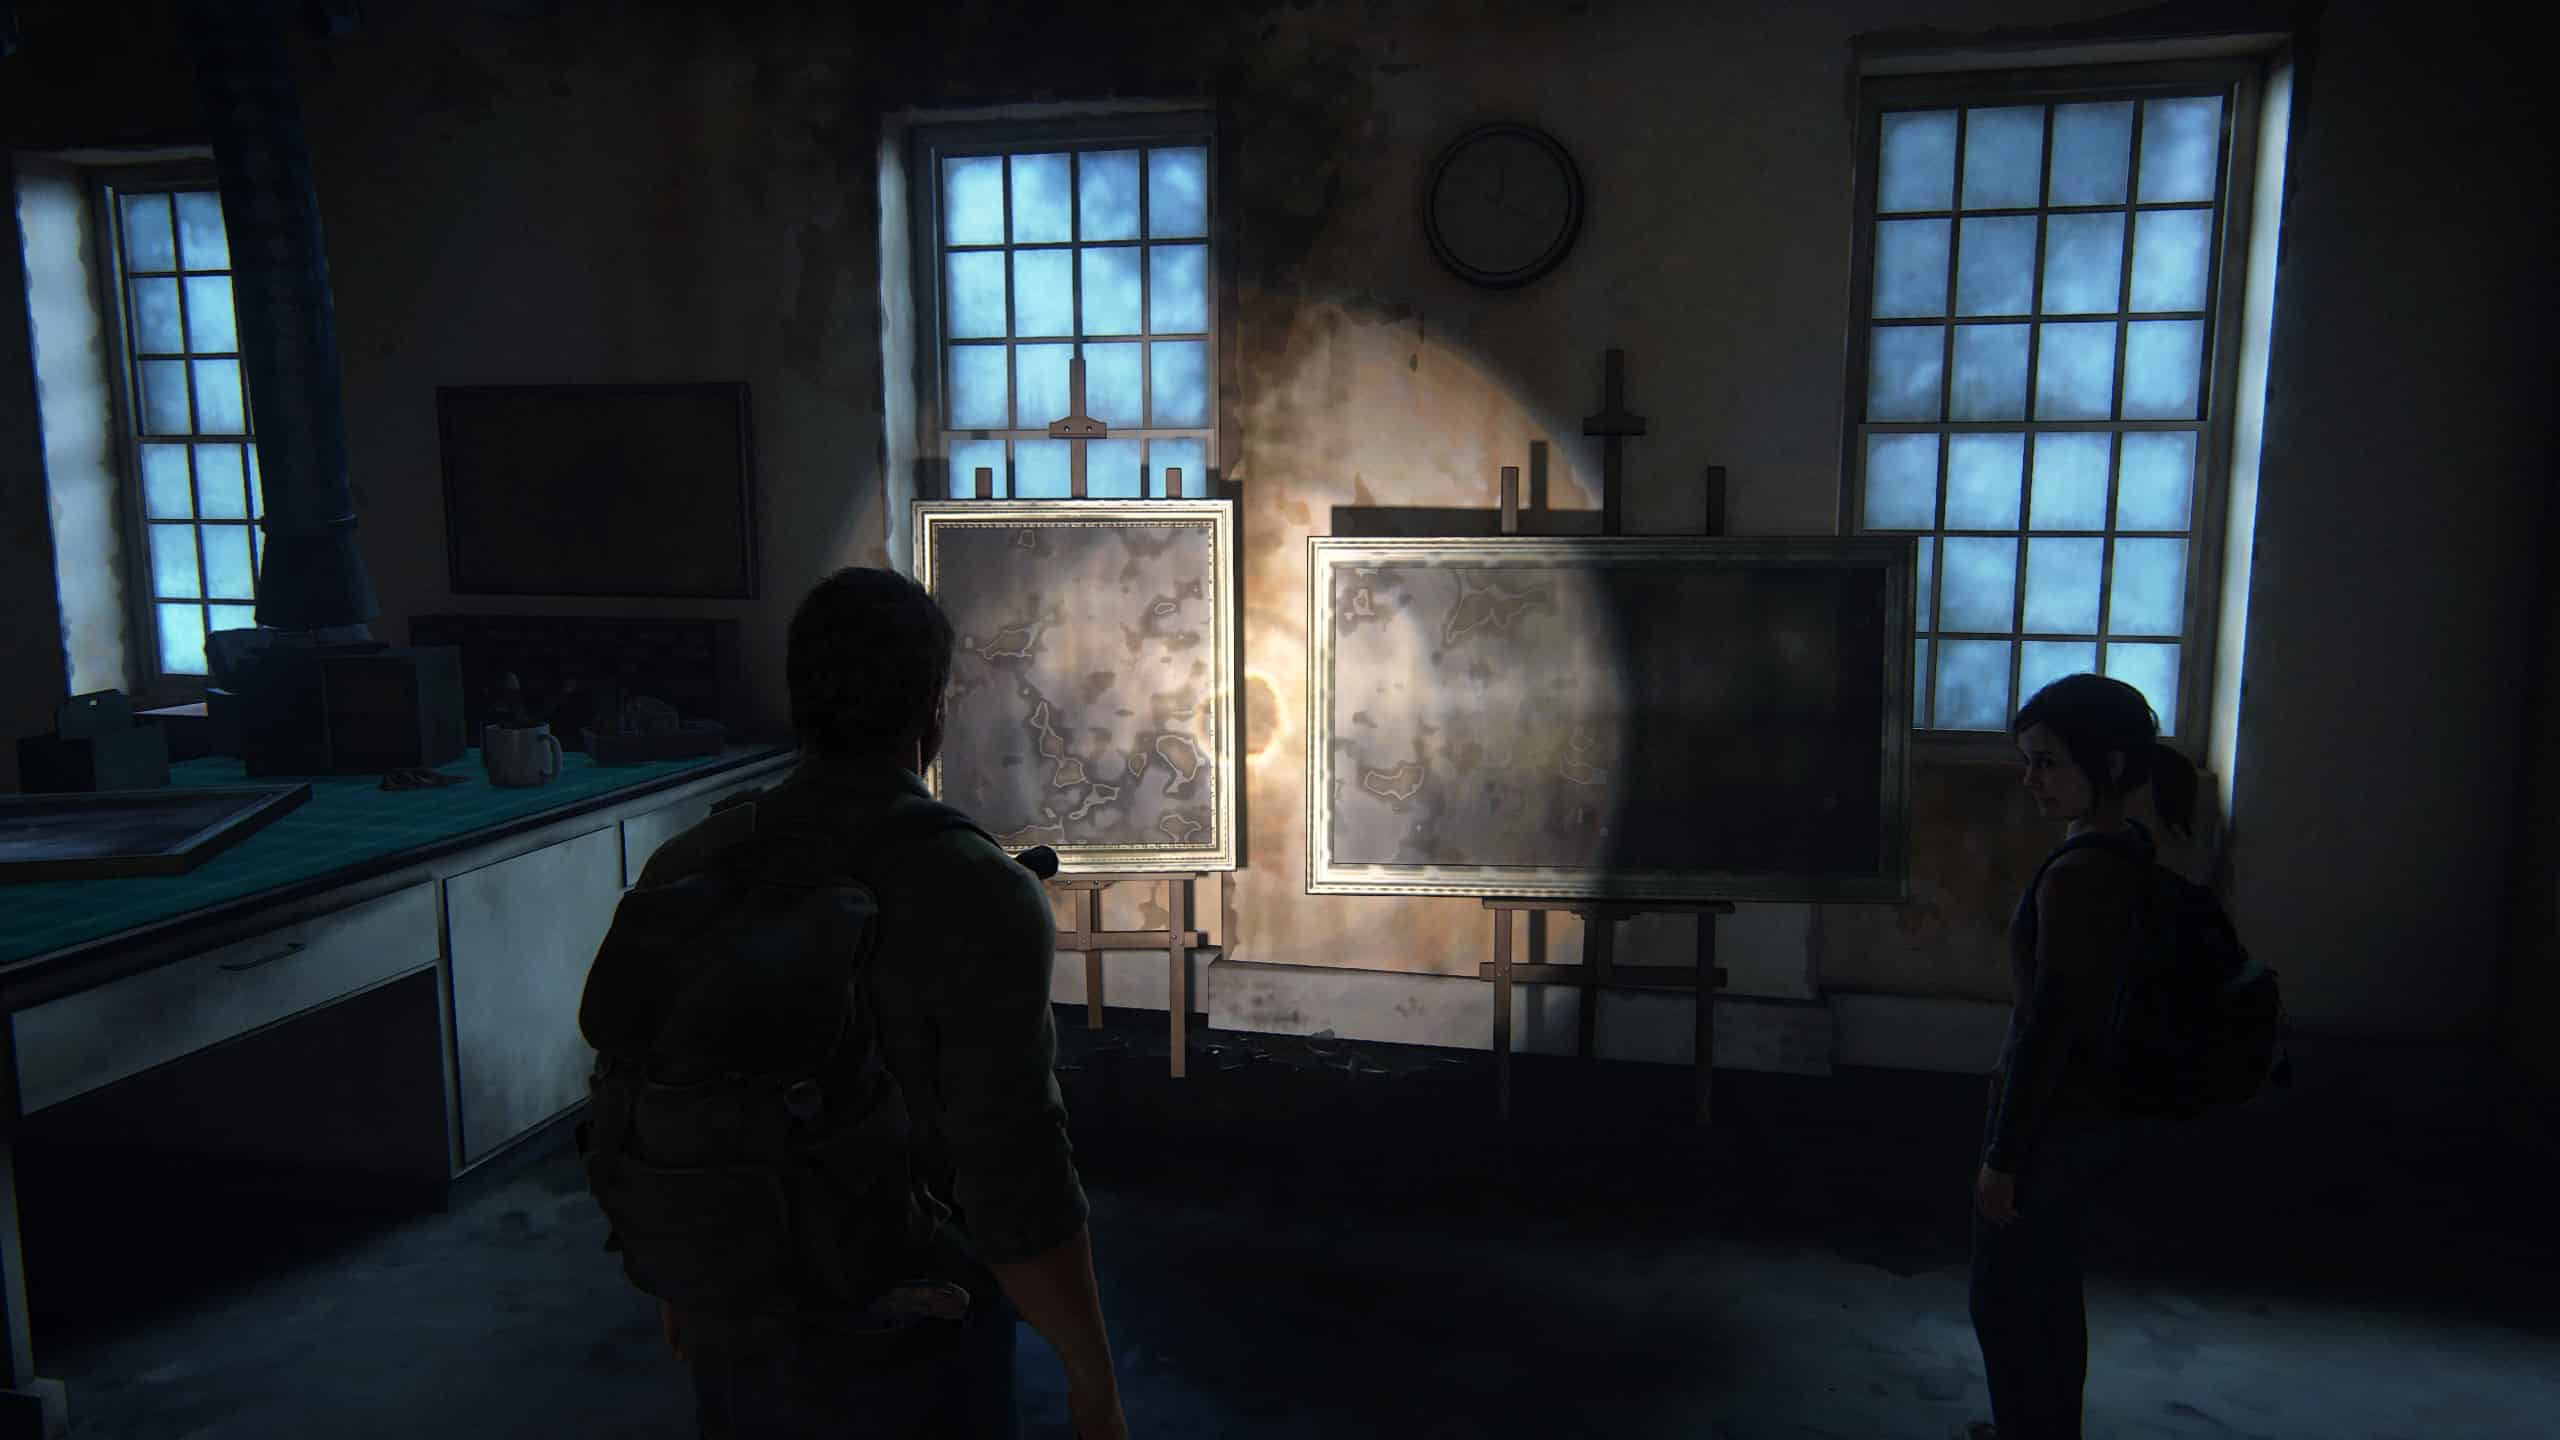 The Last of Us para PC: Preço, lançamento, requisitos e mais - Millenium